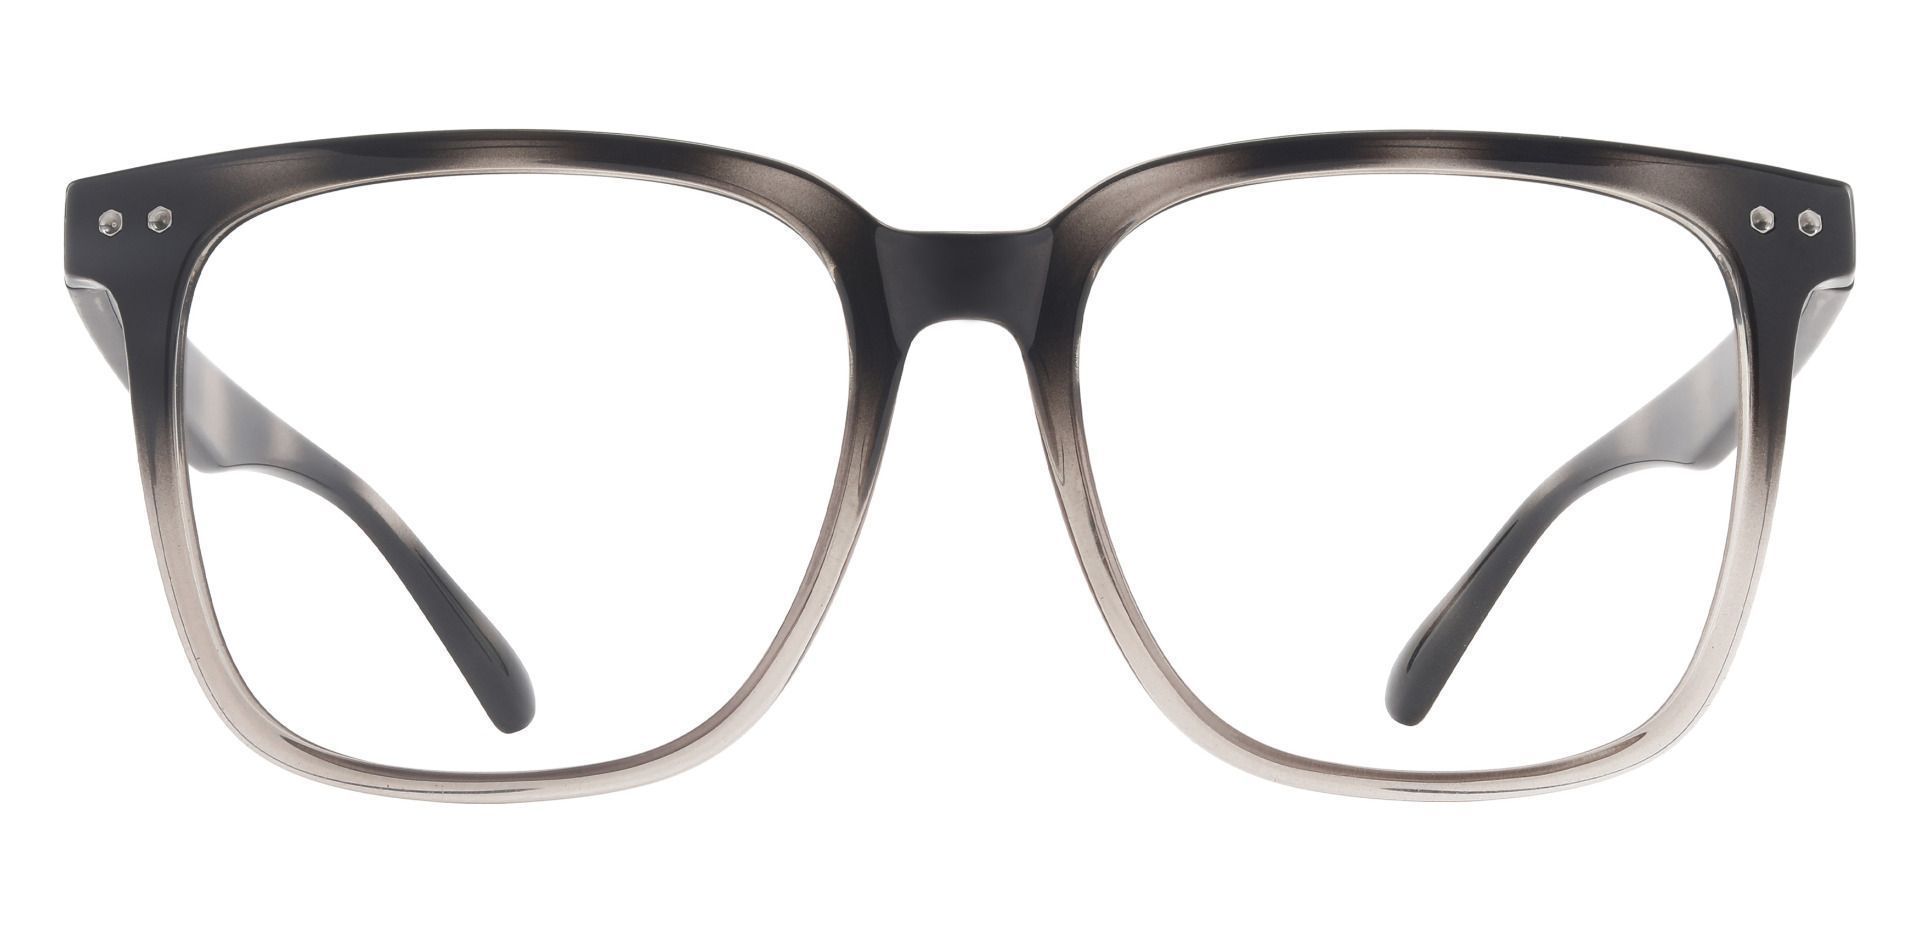 1pc Women's Retro Tr90 Non-prescription Glasses, Geometric Multicolor  Striped Small Frame Eyeglasses